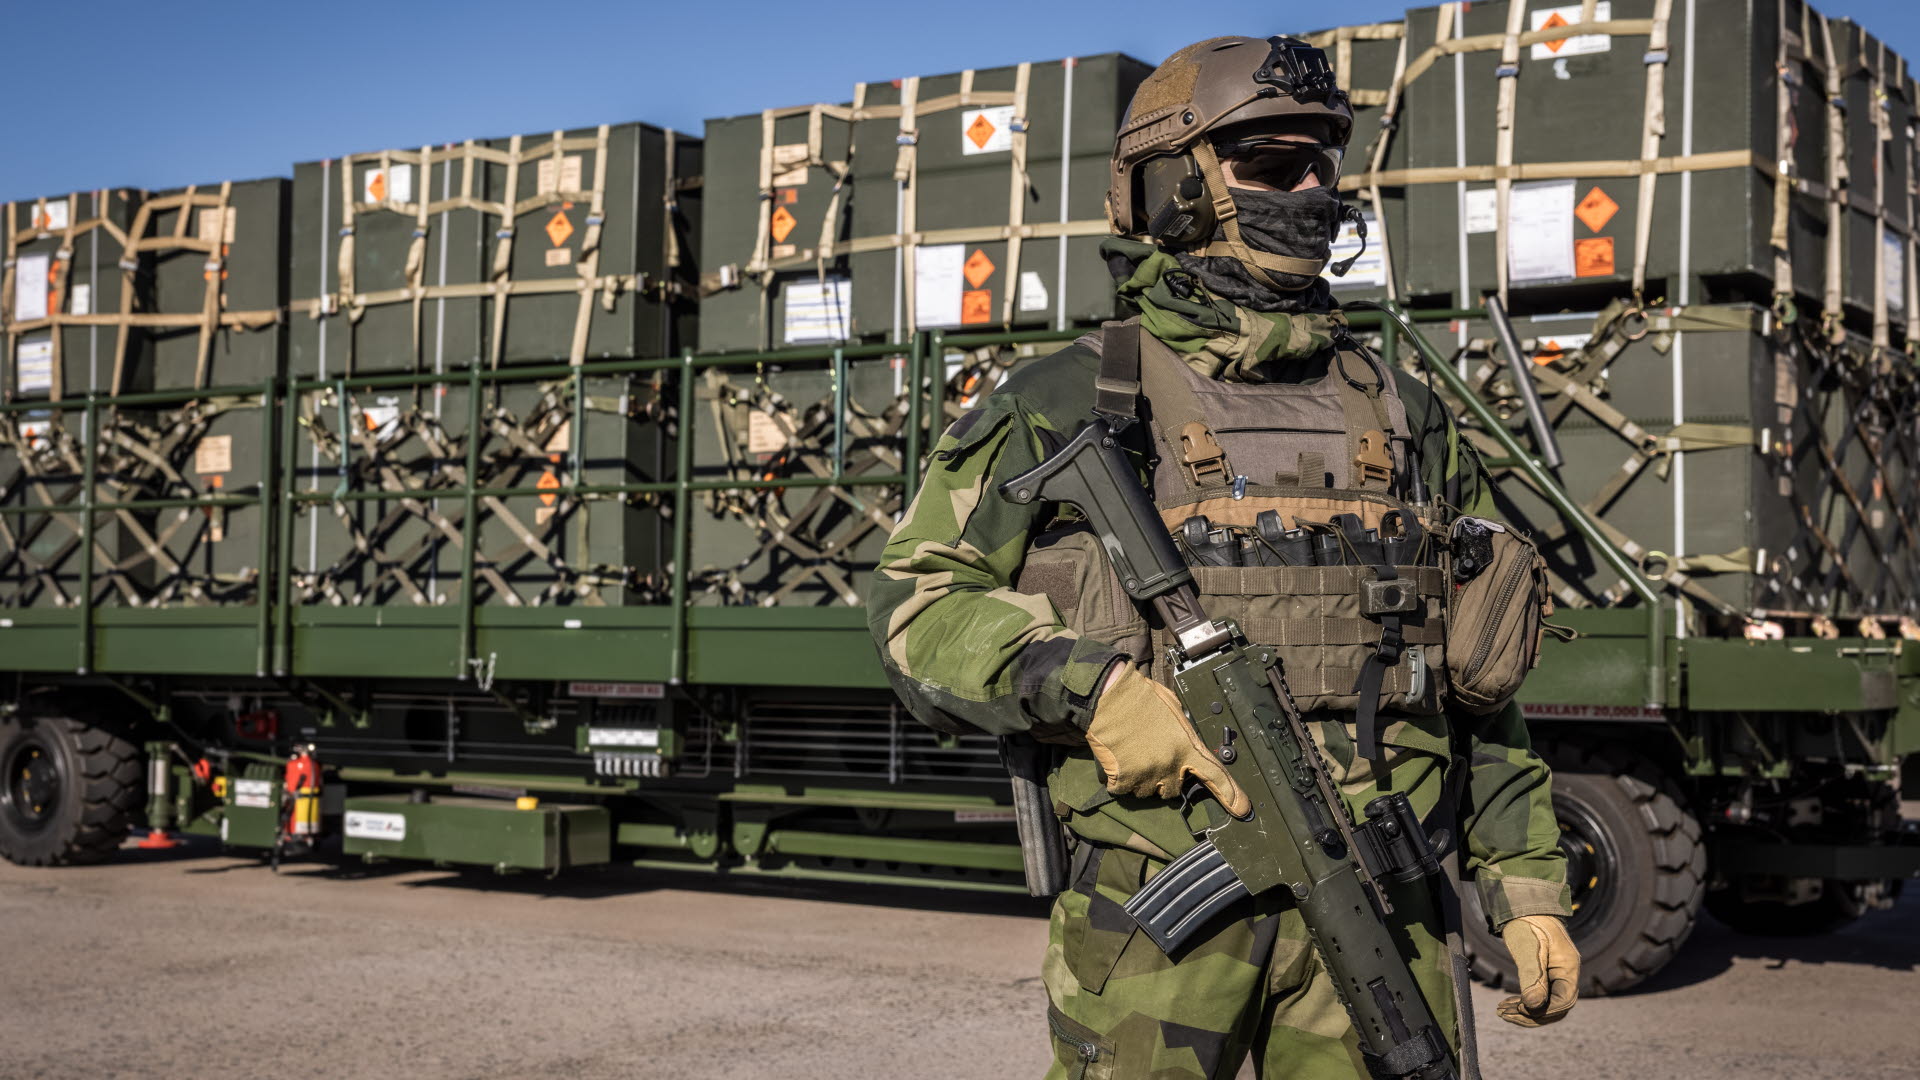 Системы противовоздушной обороны, автомобили повышенной проходимости и зимнее снаряжение: Швеция объявила о новом пакете военной помощи для Украины н